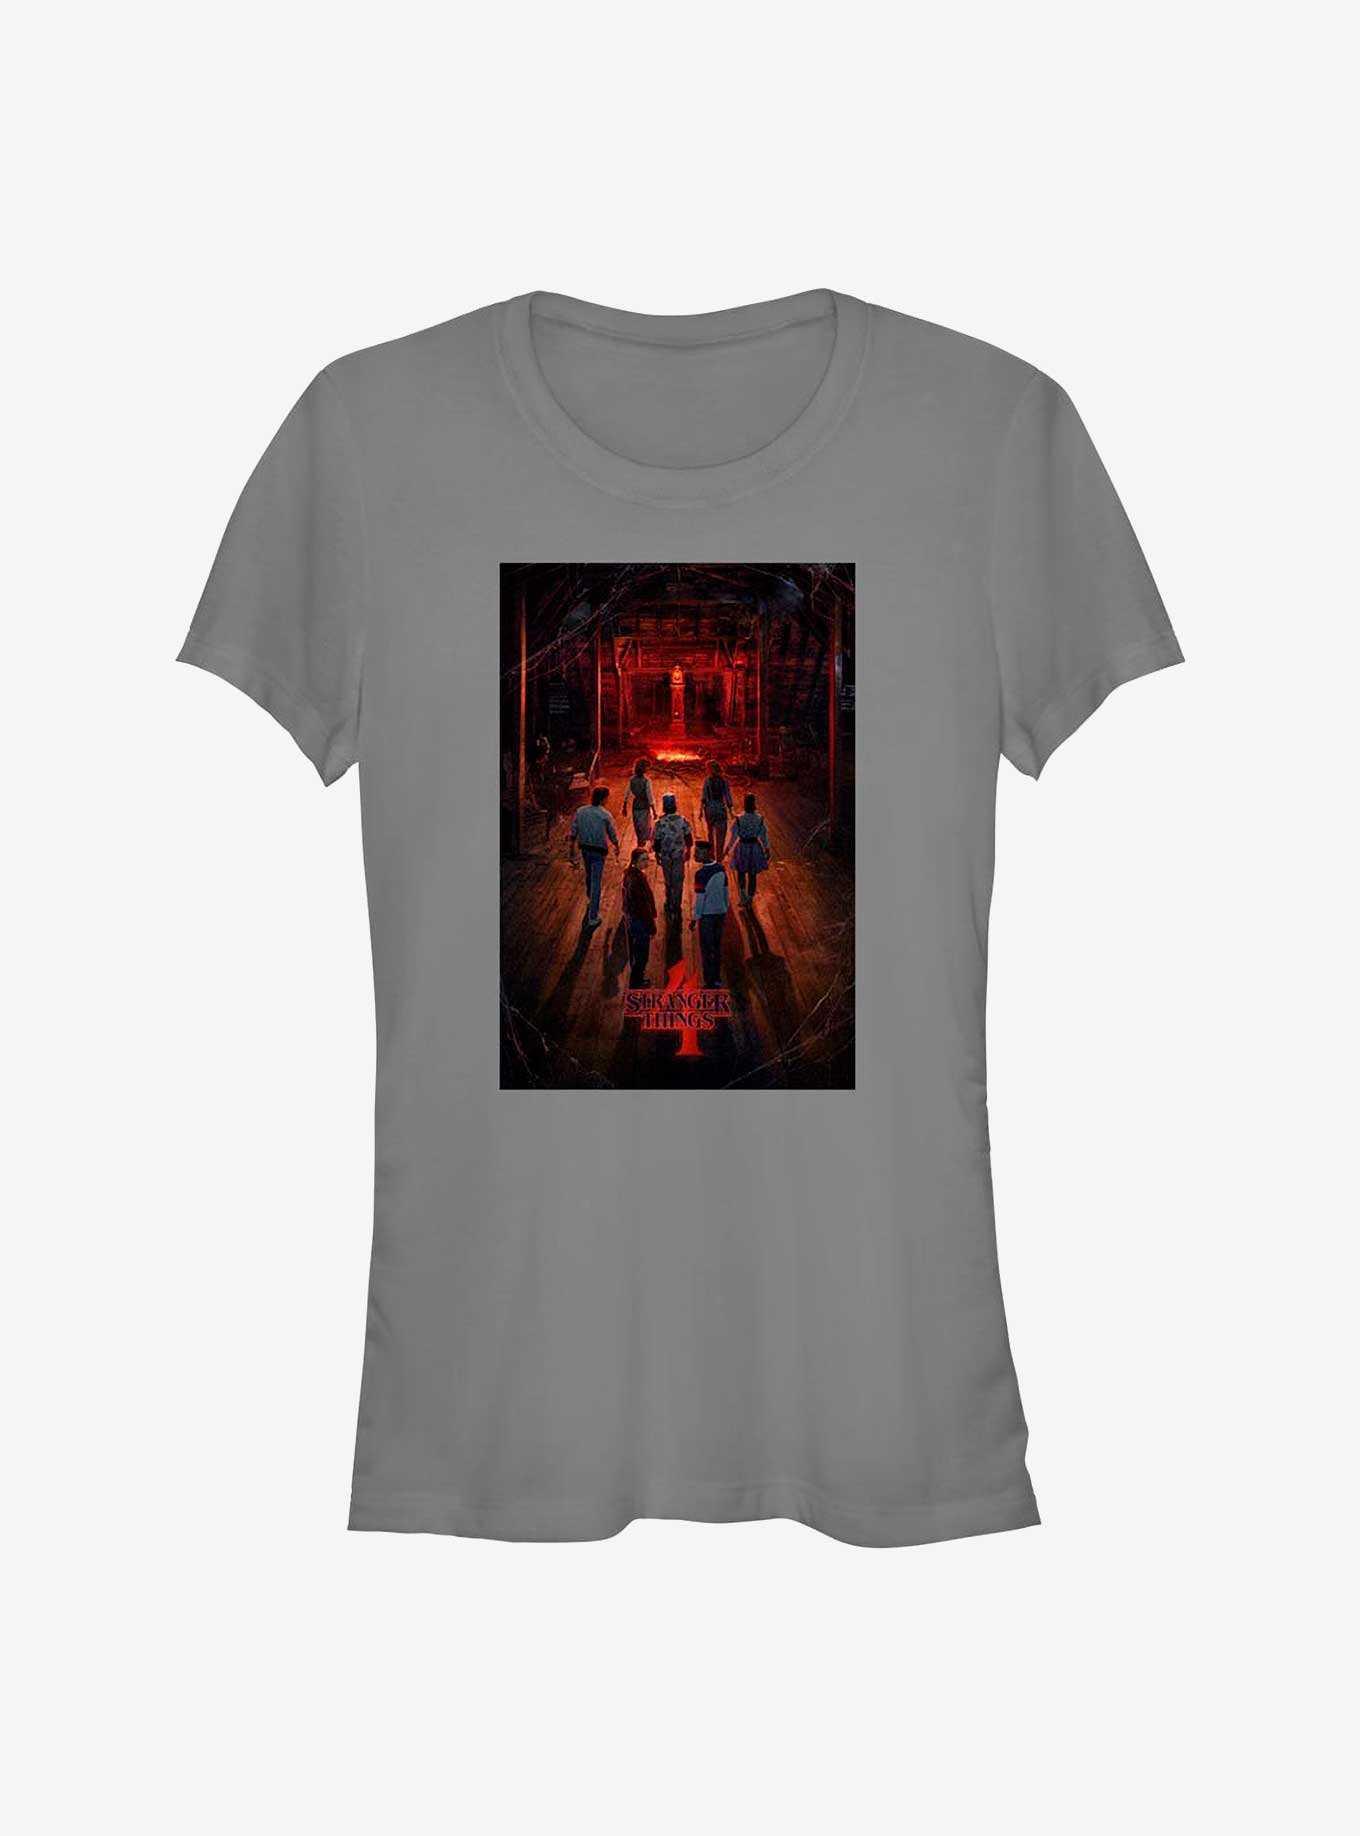 Stranger Things Creel Poster Girls T-Shirt, , hi-res